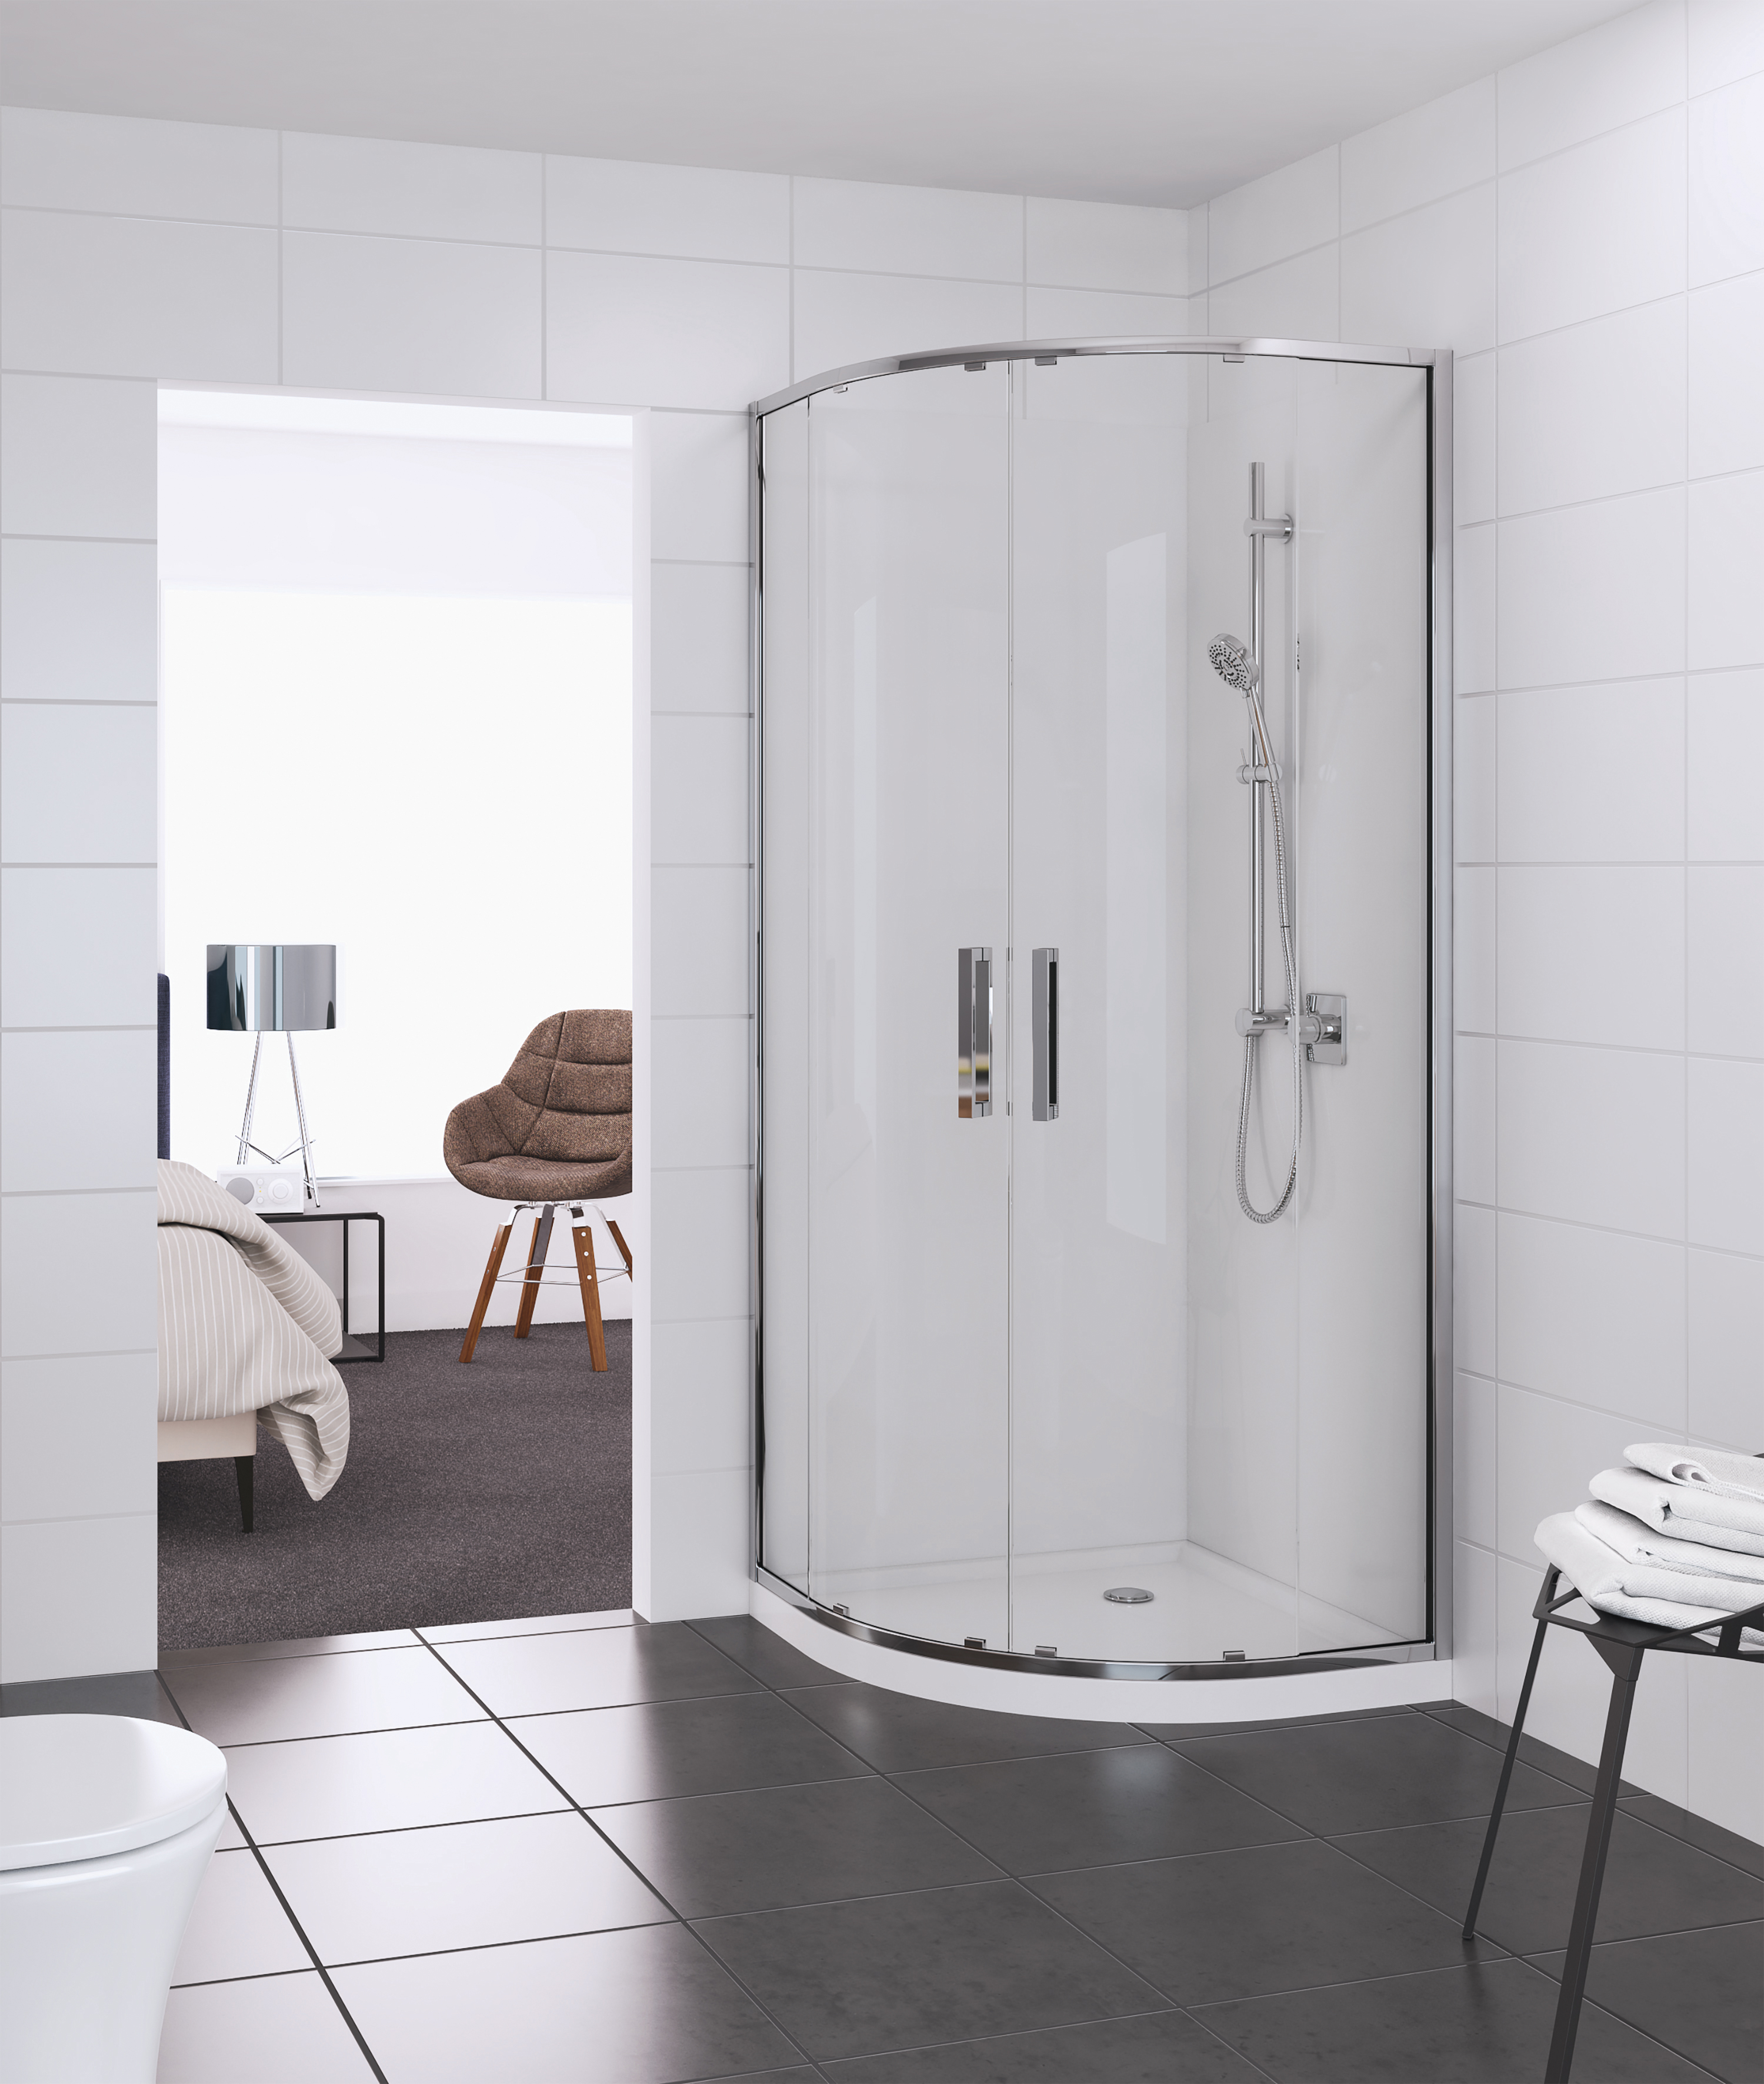 Elementi Shower Round 928mm Centre, Round Bathroom Showers